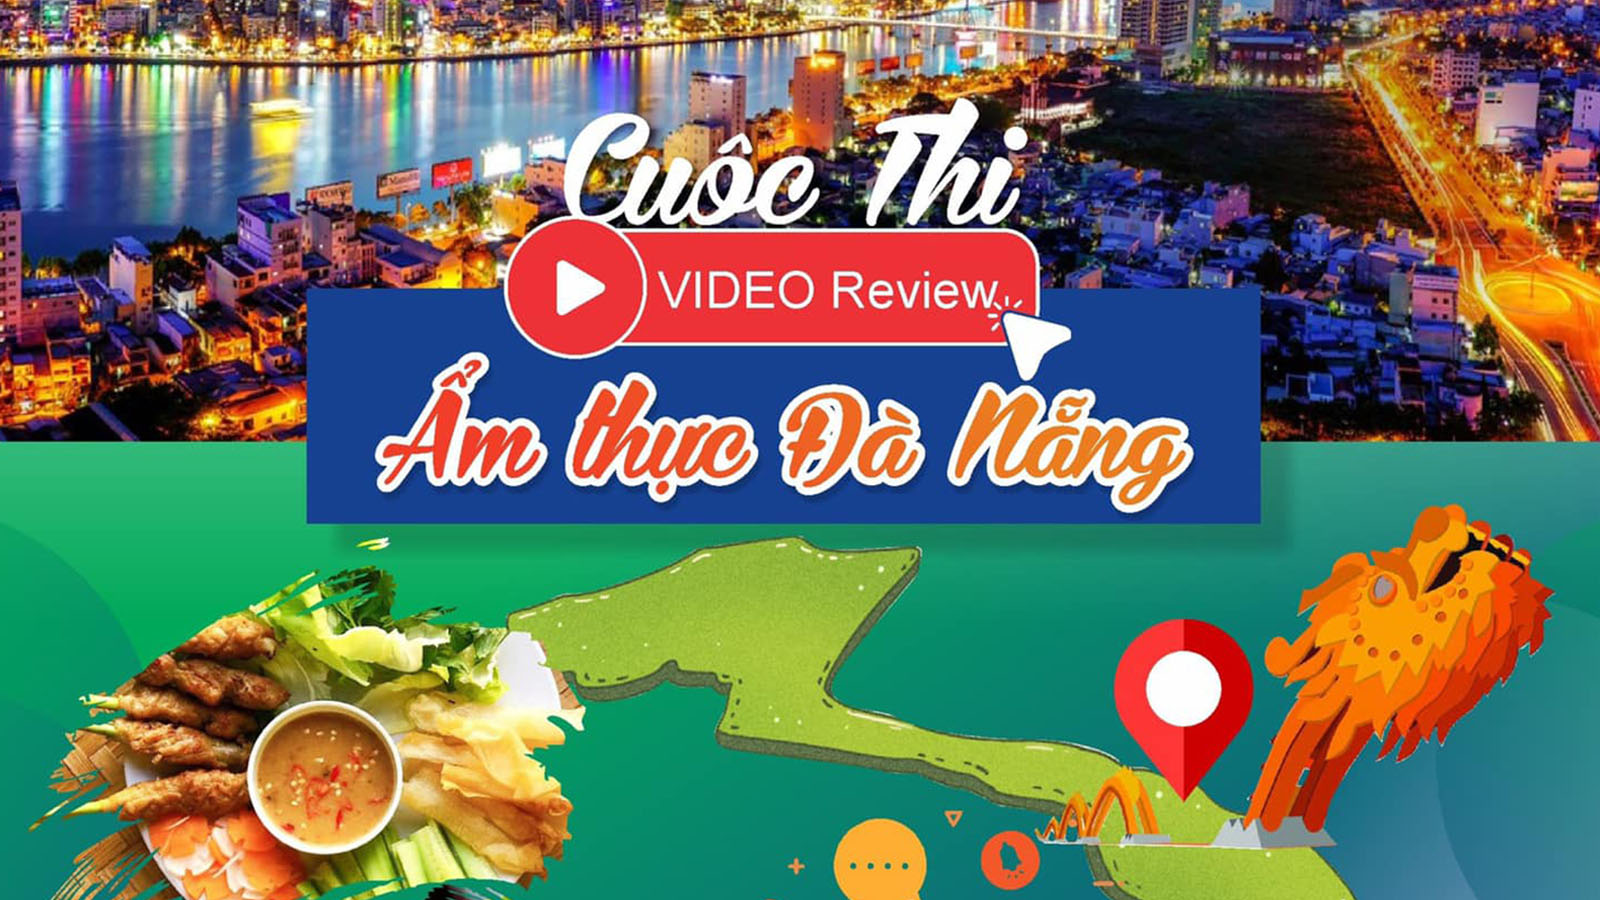 Cuộc thi “Video Review Ẩm thực Đà Nẵng” năm 2022 - Cổng thông tin du lịch thành phố Đà Nẵng